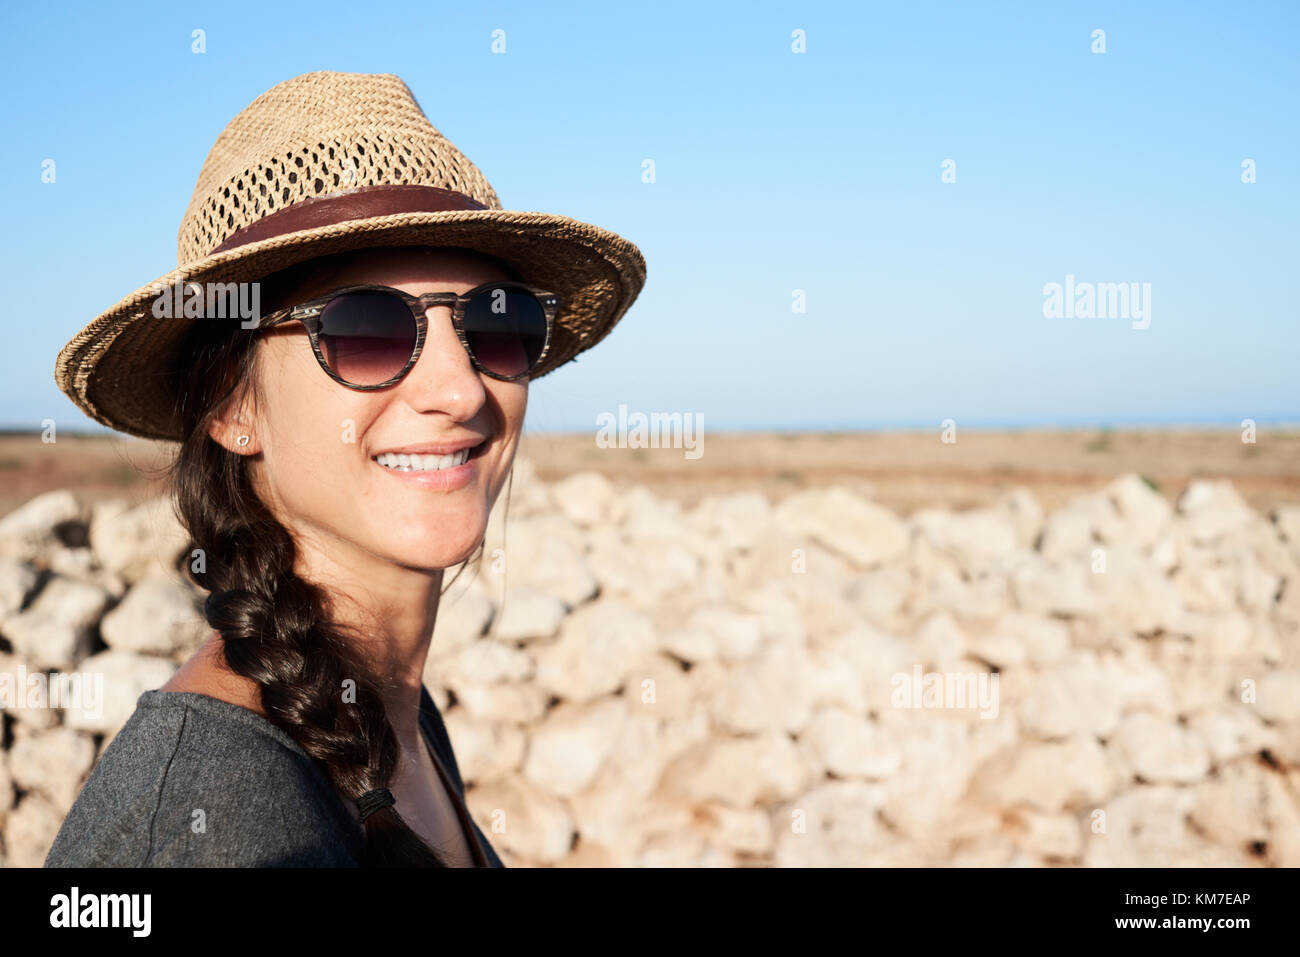 Menorca, Espagne, smiley voyageur solo portrait dans un vide, l'île ensoleillée de Minorque, solo traveler Banque D'Images